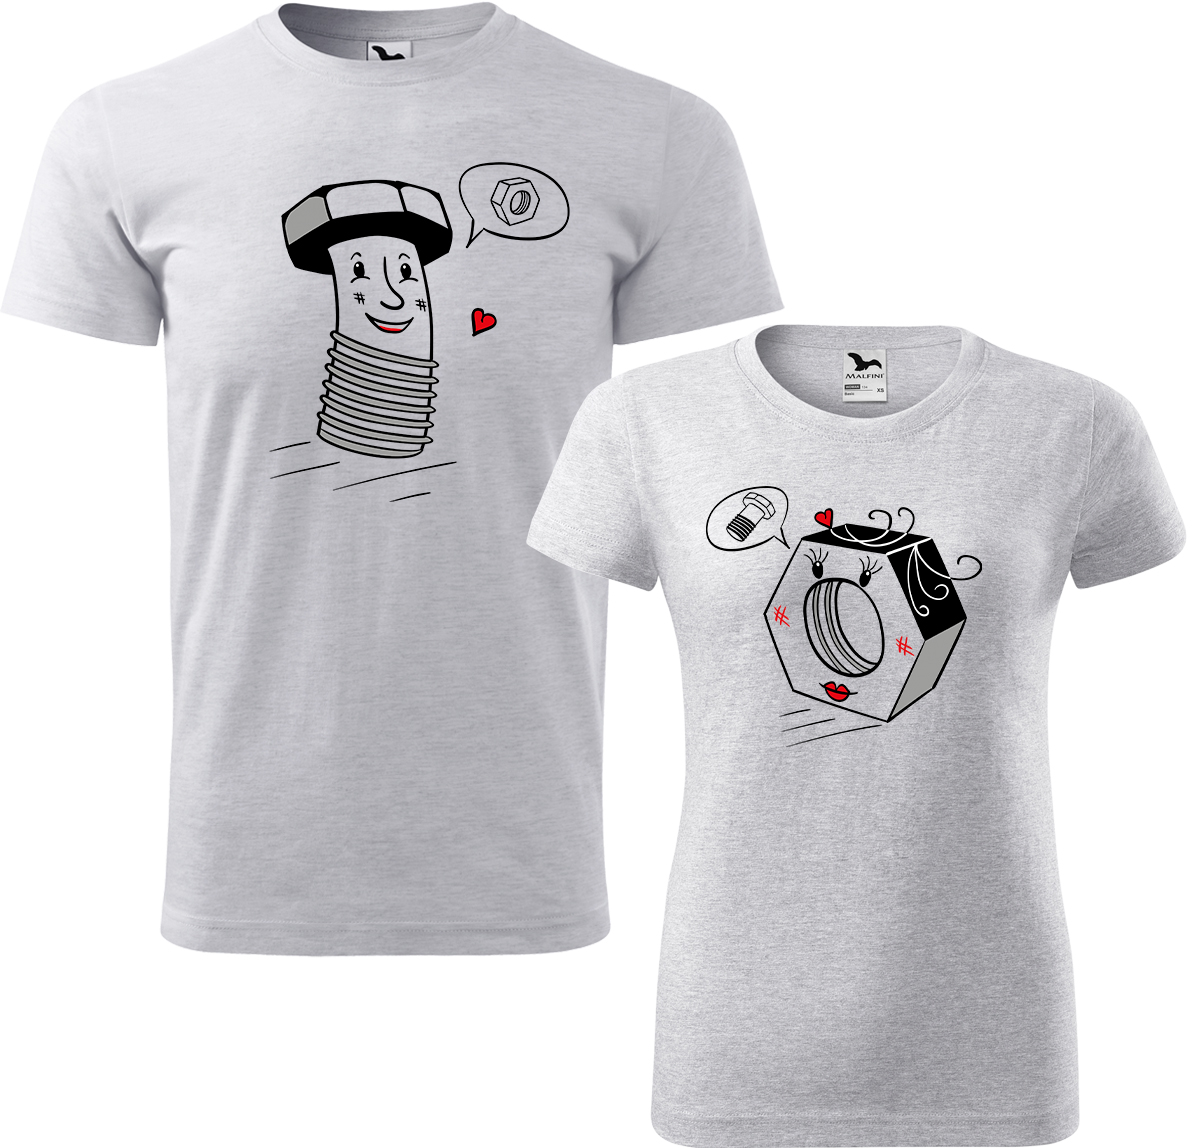 Trička pro páry - Šroubek a matička Barva: Světle šedý melír (03), Velikost dámské tričko: XL, Velikost pánské tričko: XL